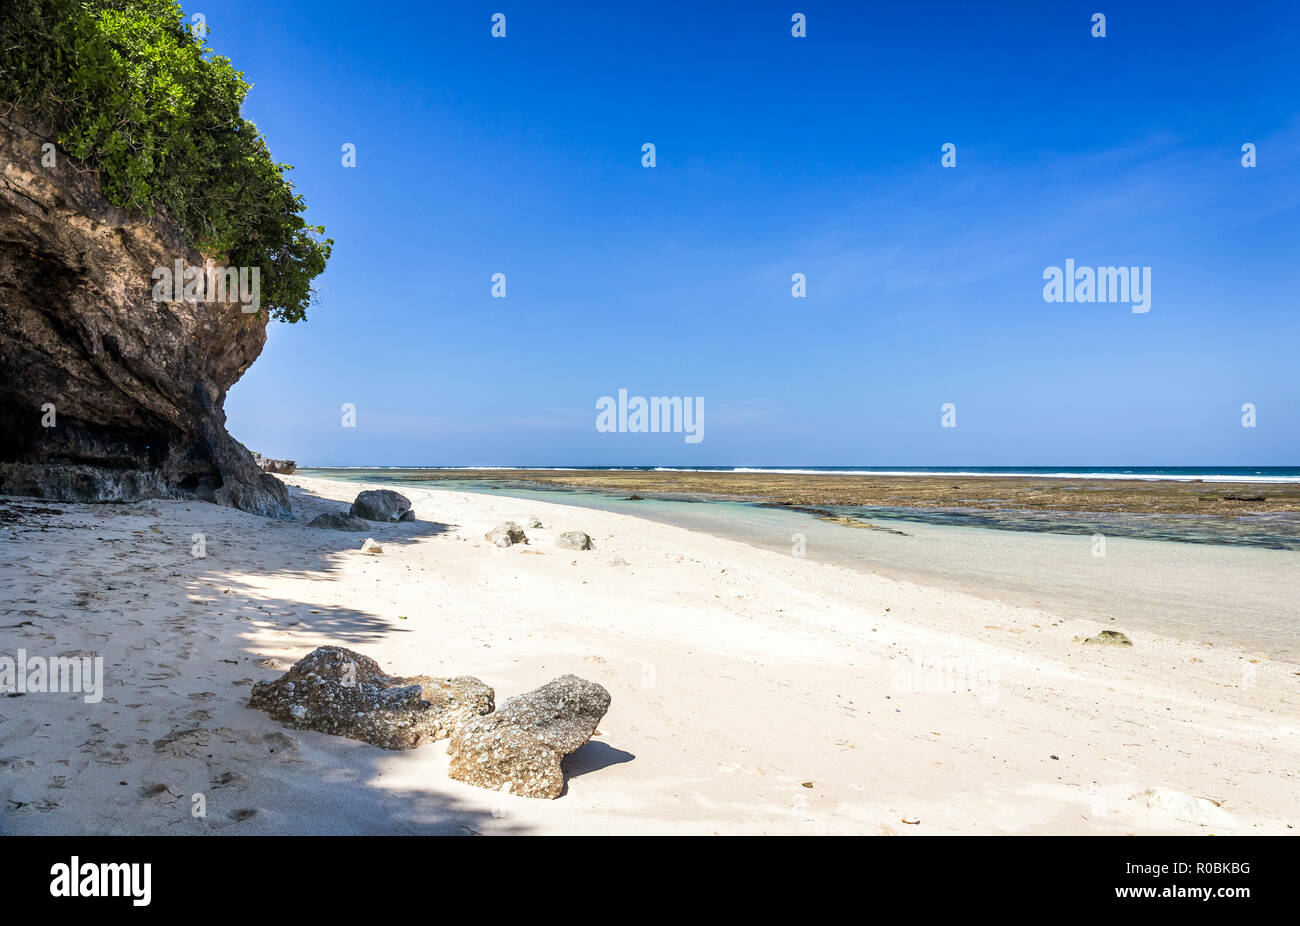 Beautiful Pandawa beach on Bali island in Indonesia Stock Photo